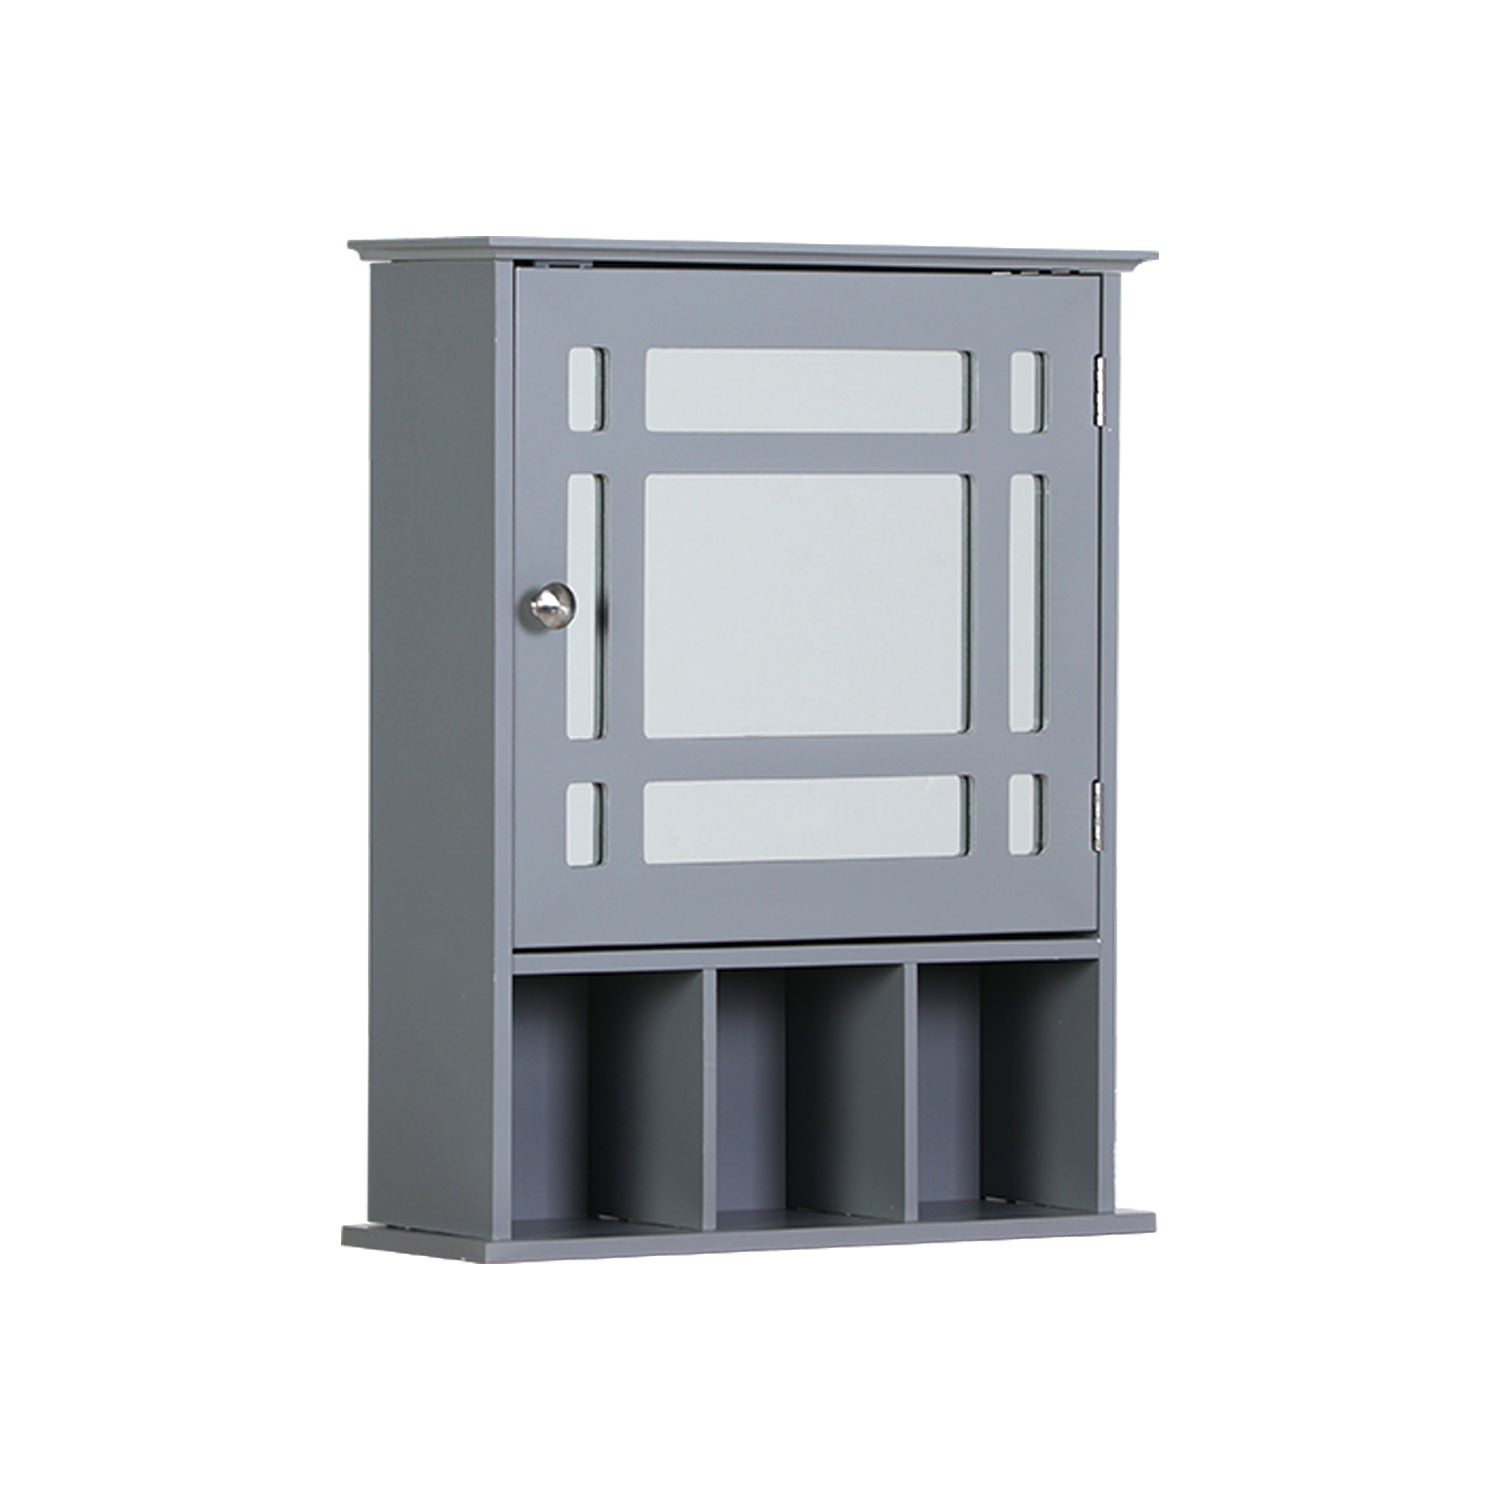 PHI VILLA 3-Color Single Door Medicine Cabinet Bathroom Wall Cabinet with Mirror Door